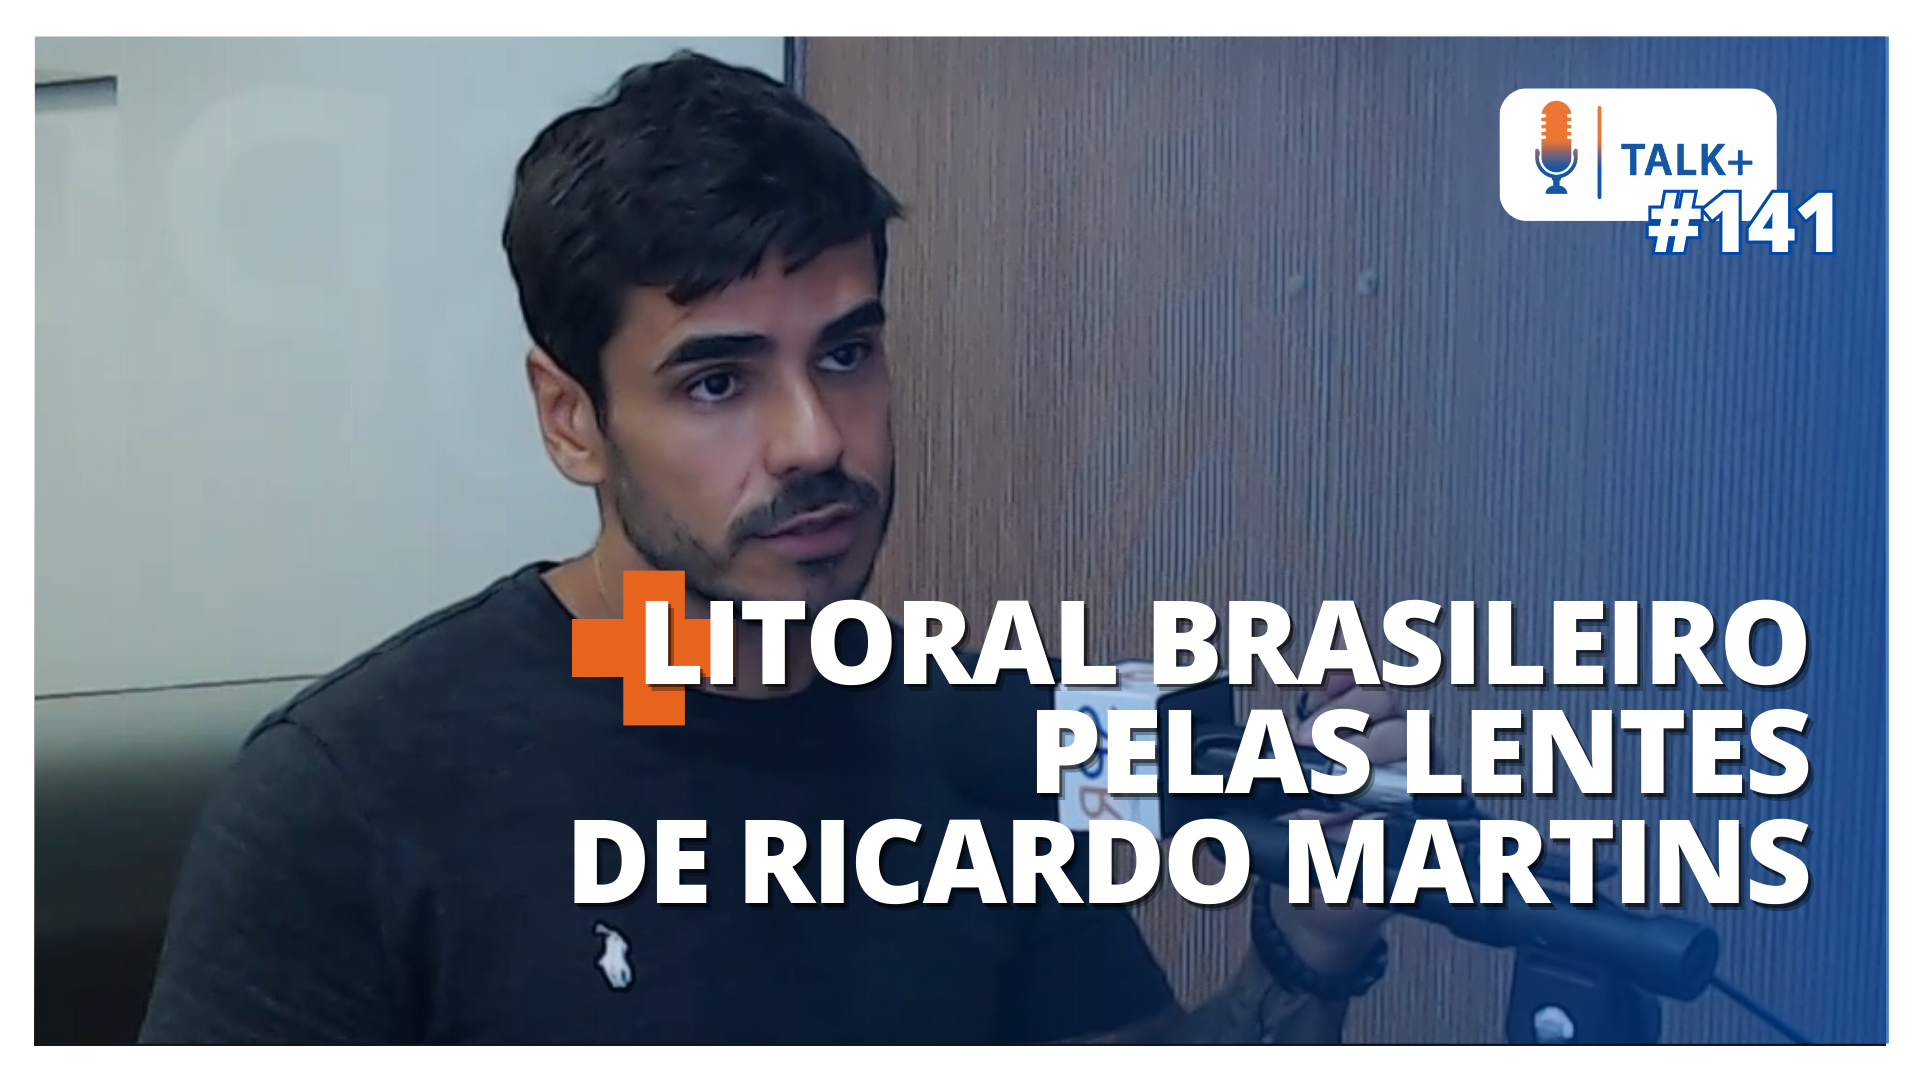 TALK+ #141: Ricardo Martins, autor do livro Litoral Brasileiro